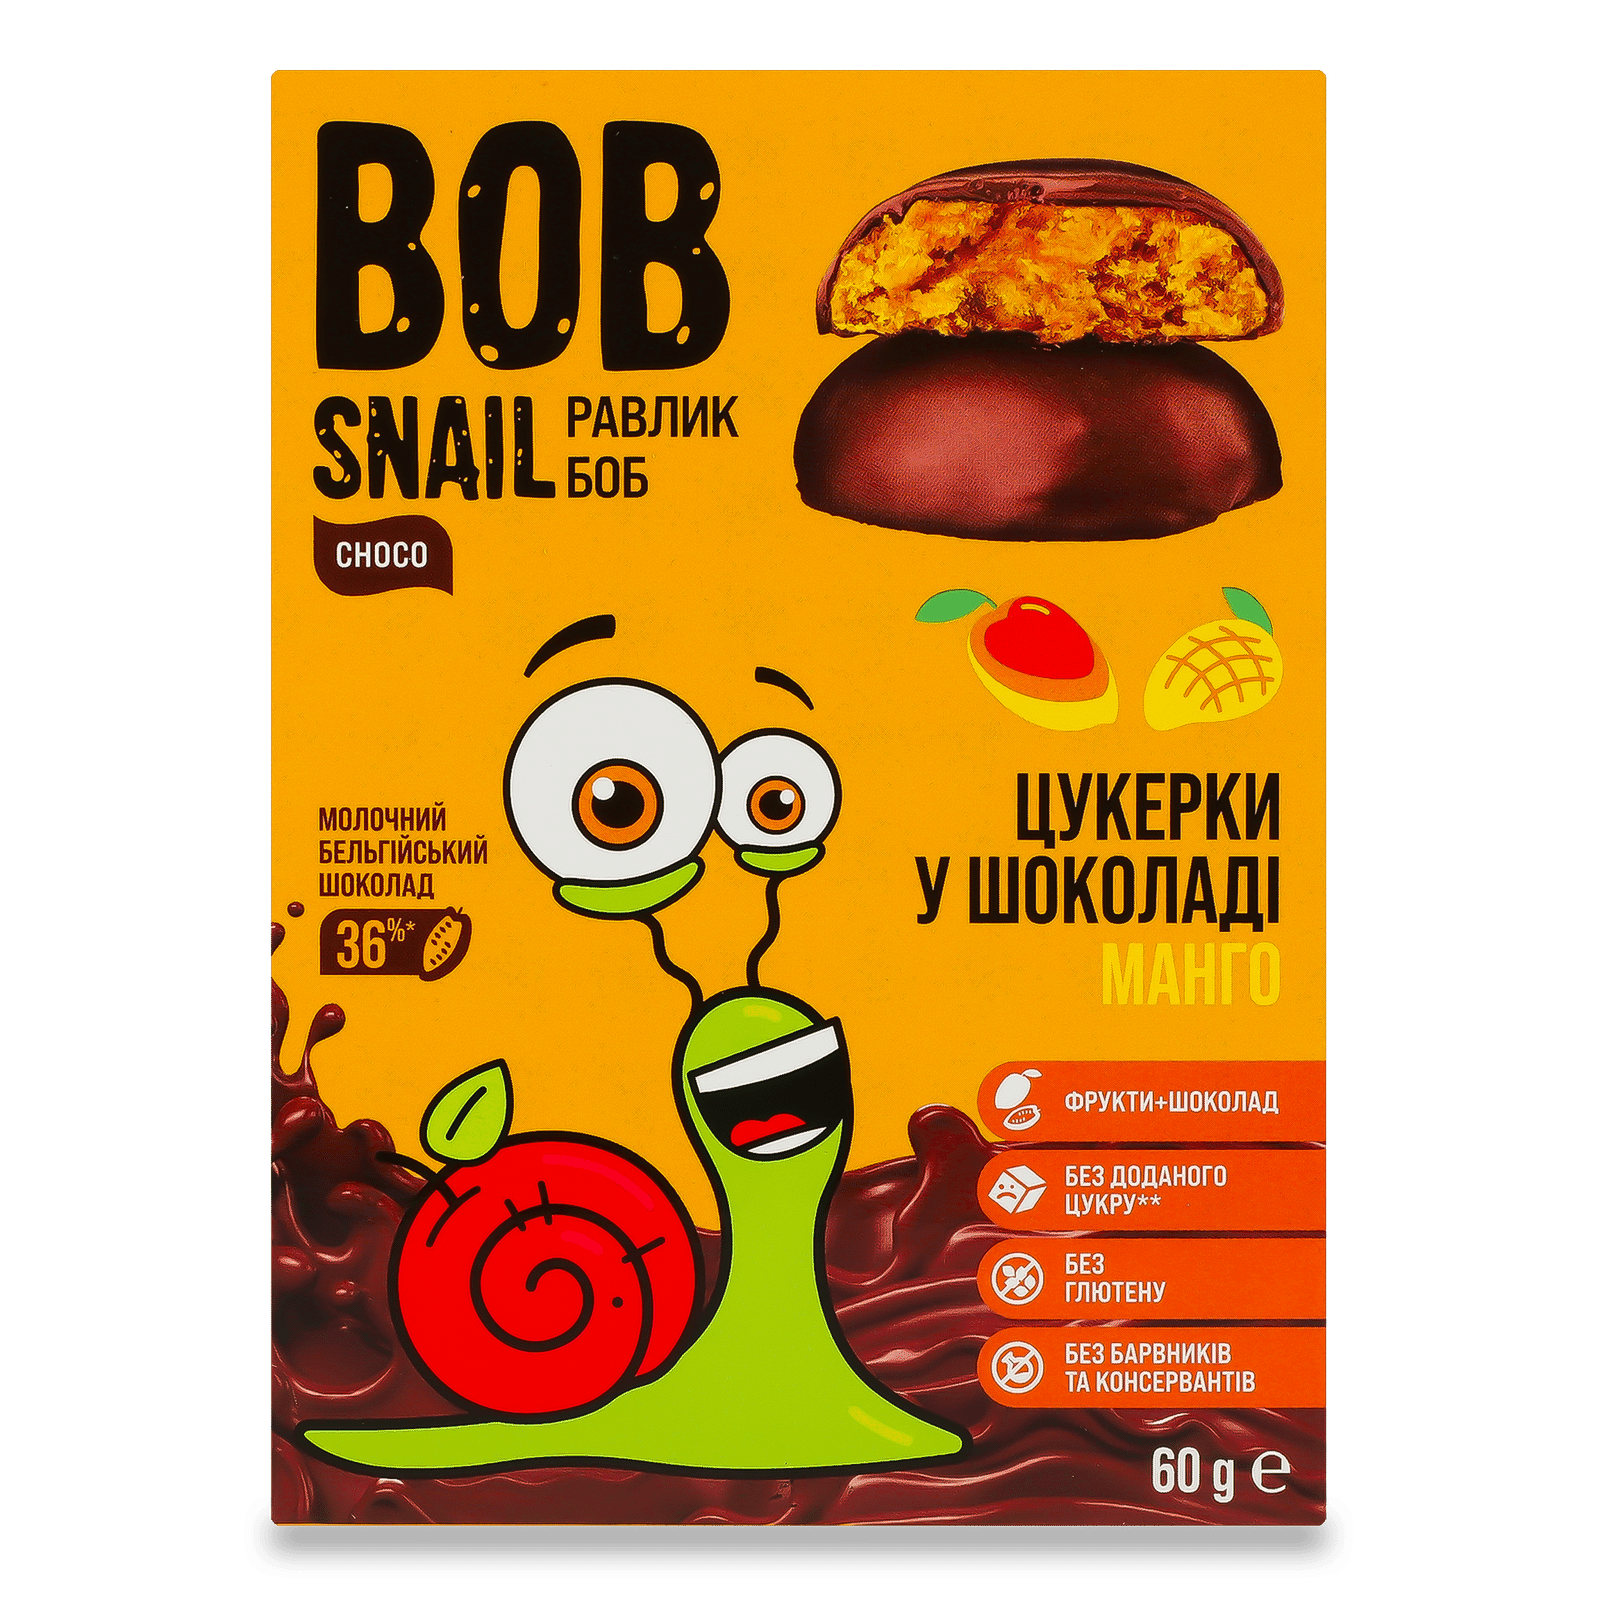 Цукерки Bob Snail мангові бельгійський молочний шоколад - 1